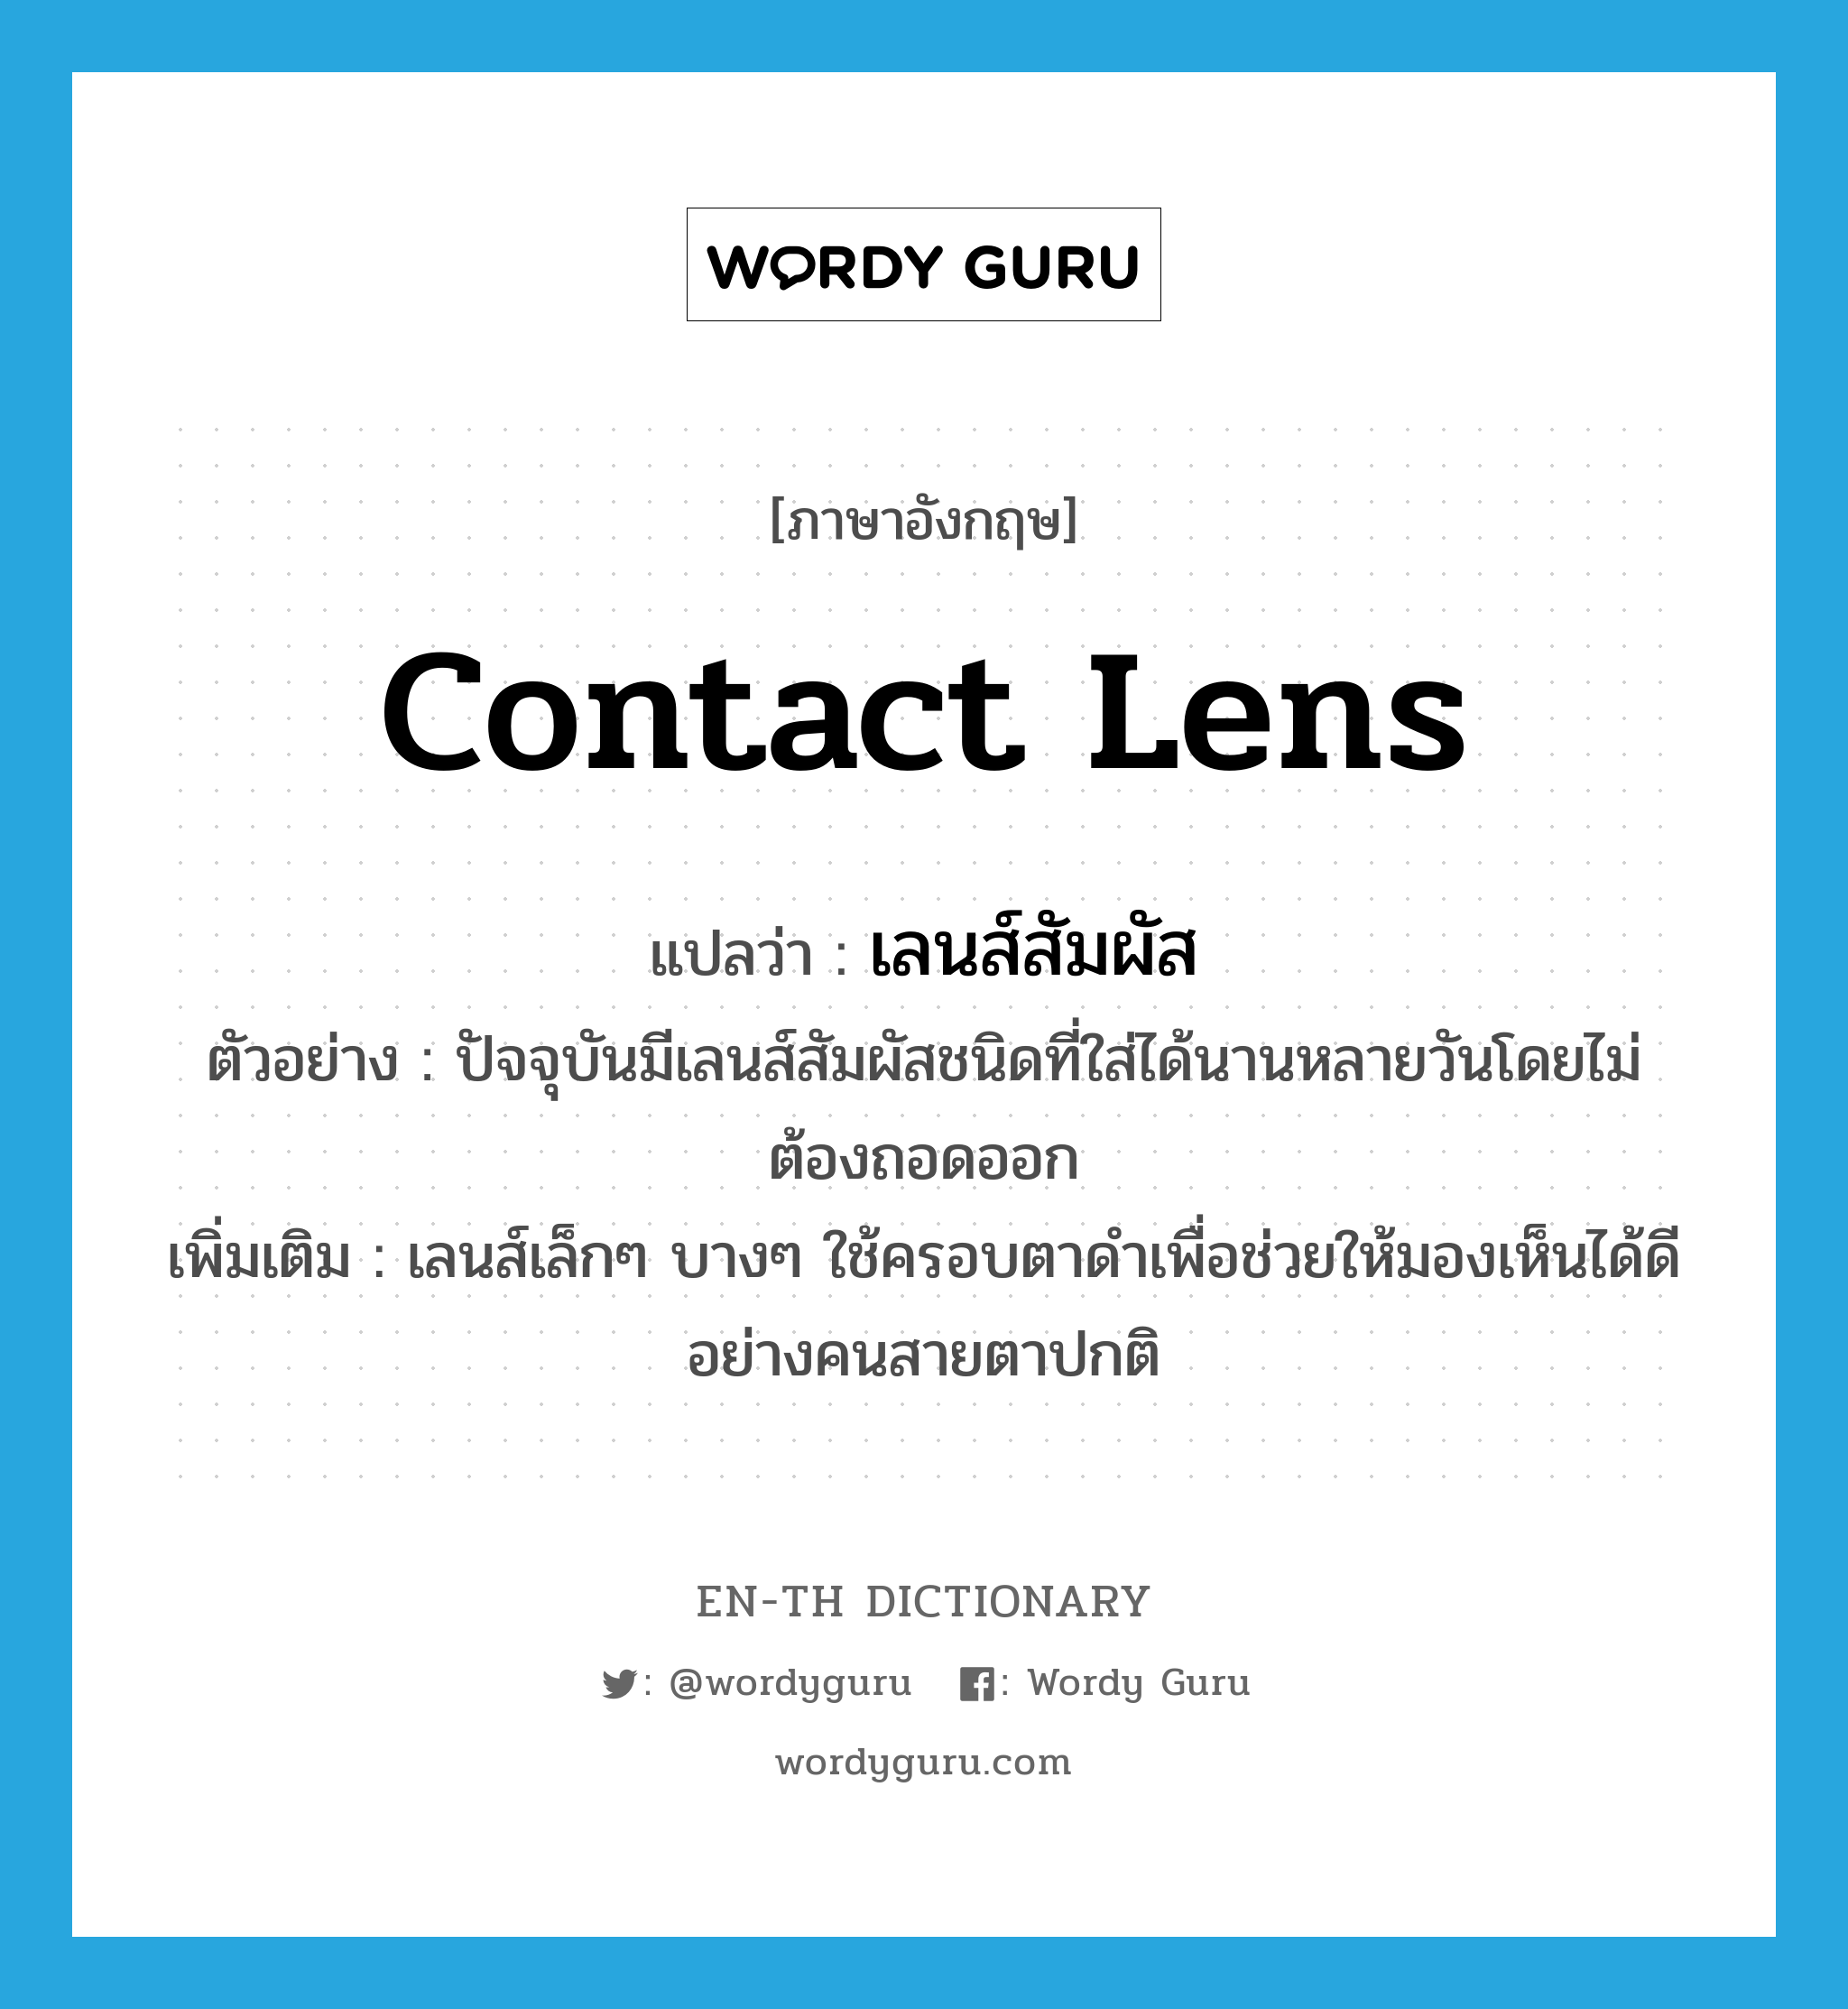 contact lens แปลว่า?, คำศัพท์ภาษาอังกฤษ contact lens แปลว่า เลนส์สัมผัส ประเภท N ตัวอย่าง ปัจจุบันมีเลนส์สัมผัสชนิดที่ใส่ได้นานหลายวันโดยไม่ต้องถอดออก เพิ่มเติม เลนส์เล็กๆ บางๆ ใช้ครอบตาดำเพื่อช่วยให้มองเห็นได้ดีอย่างคนสายตาปกติ หมวด N